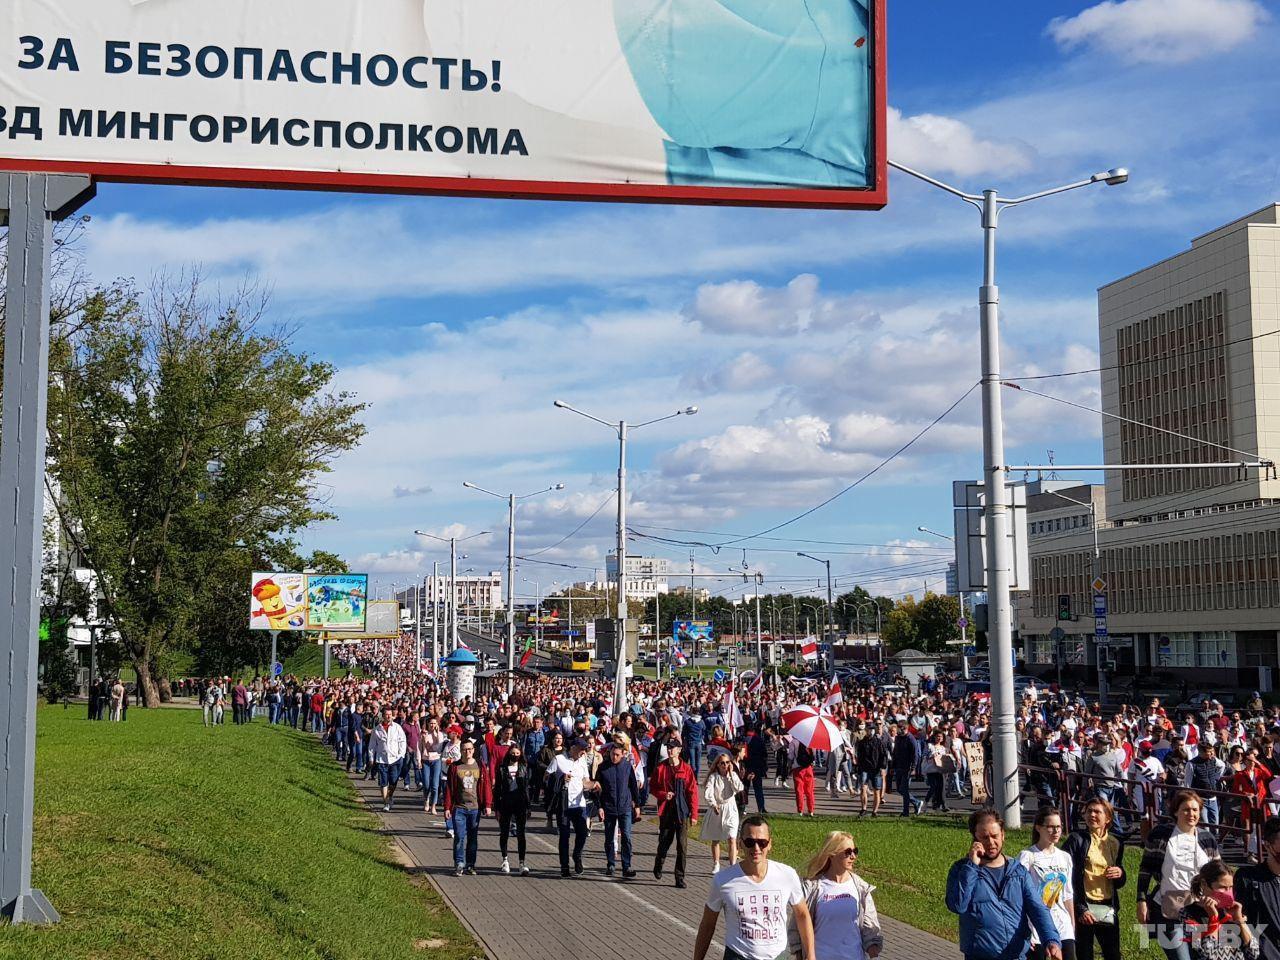 Військова техніка та силовики: у Білорусі розганяють учасників протесту